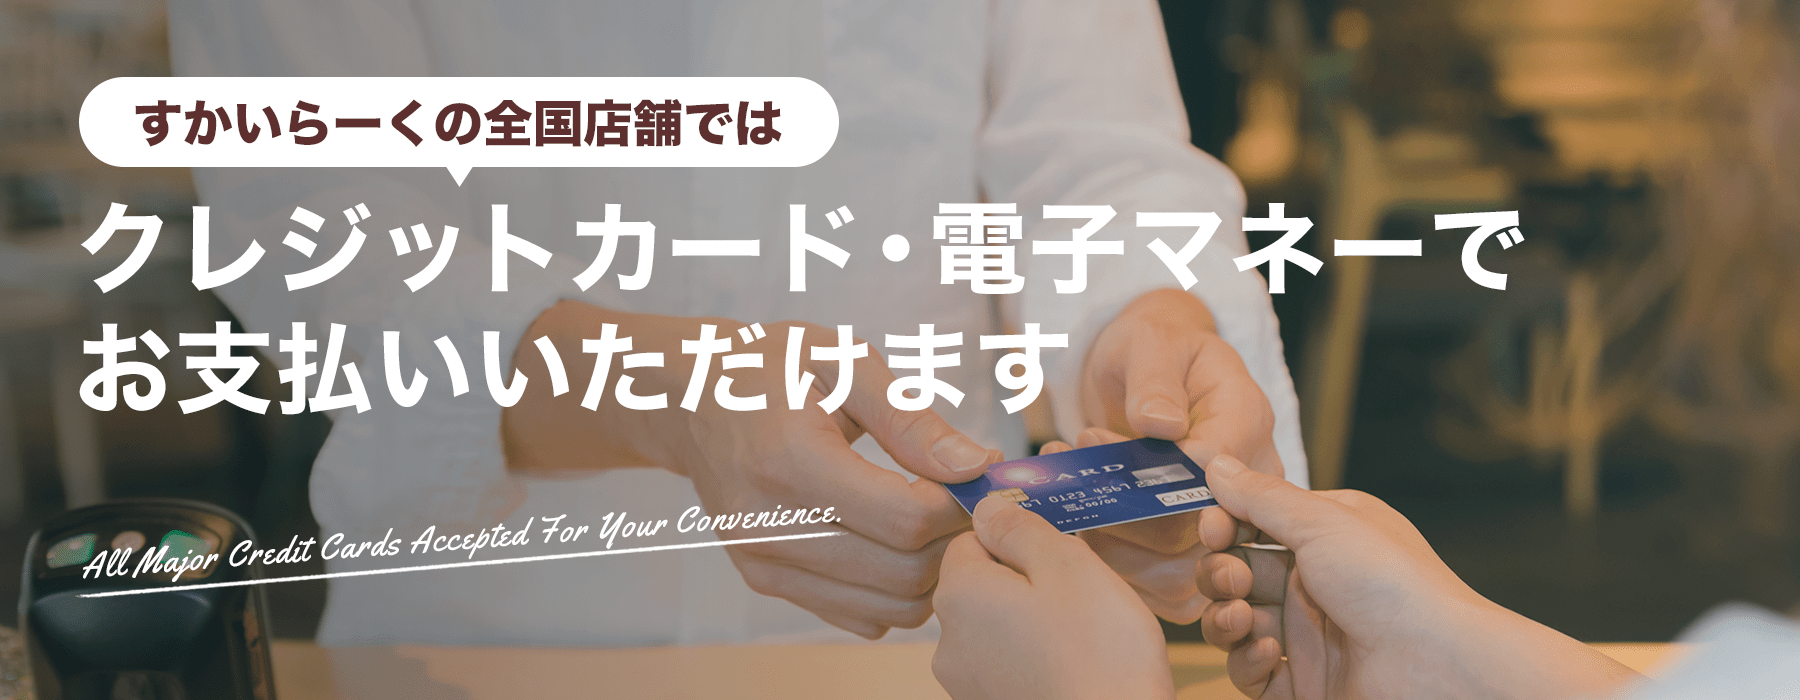 Skylark (すかいらーく) 전국 매장에서 신용 카드 전자 화폐로 결제 할 수 있습니다